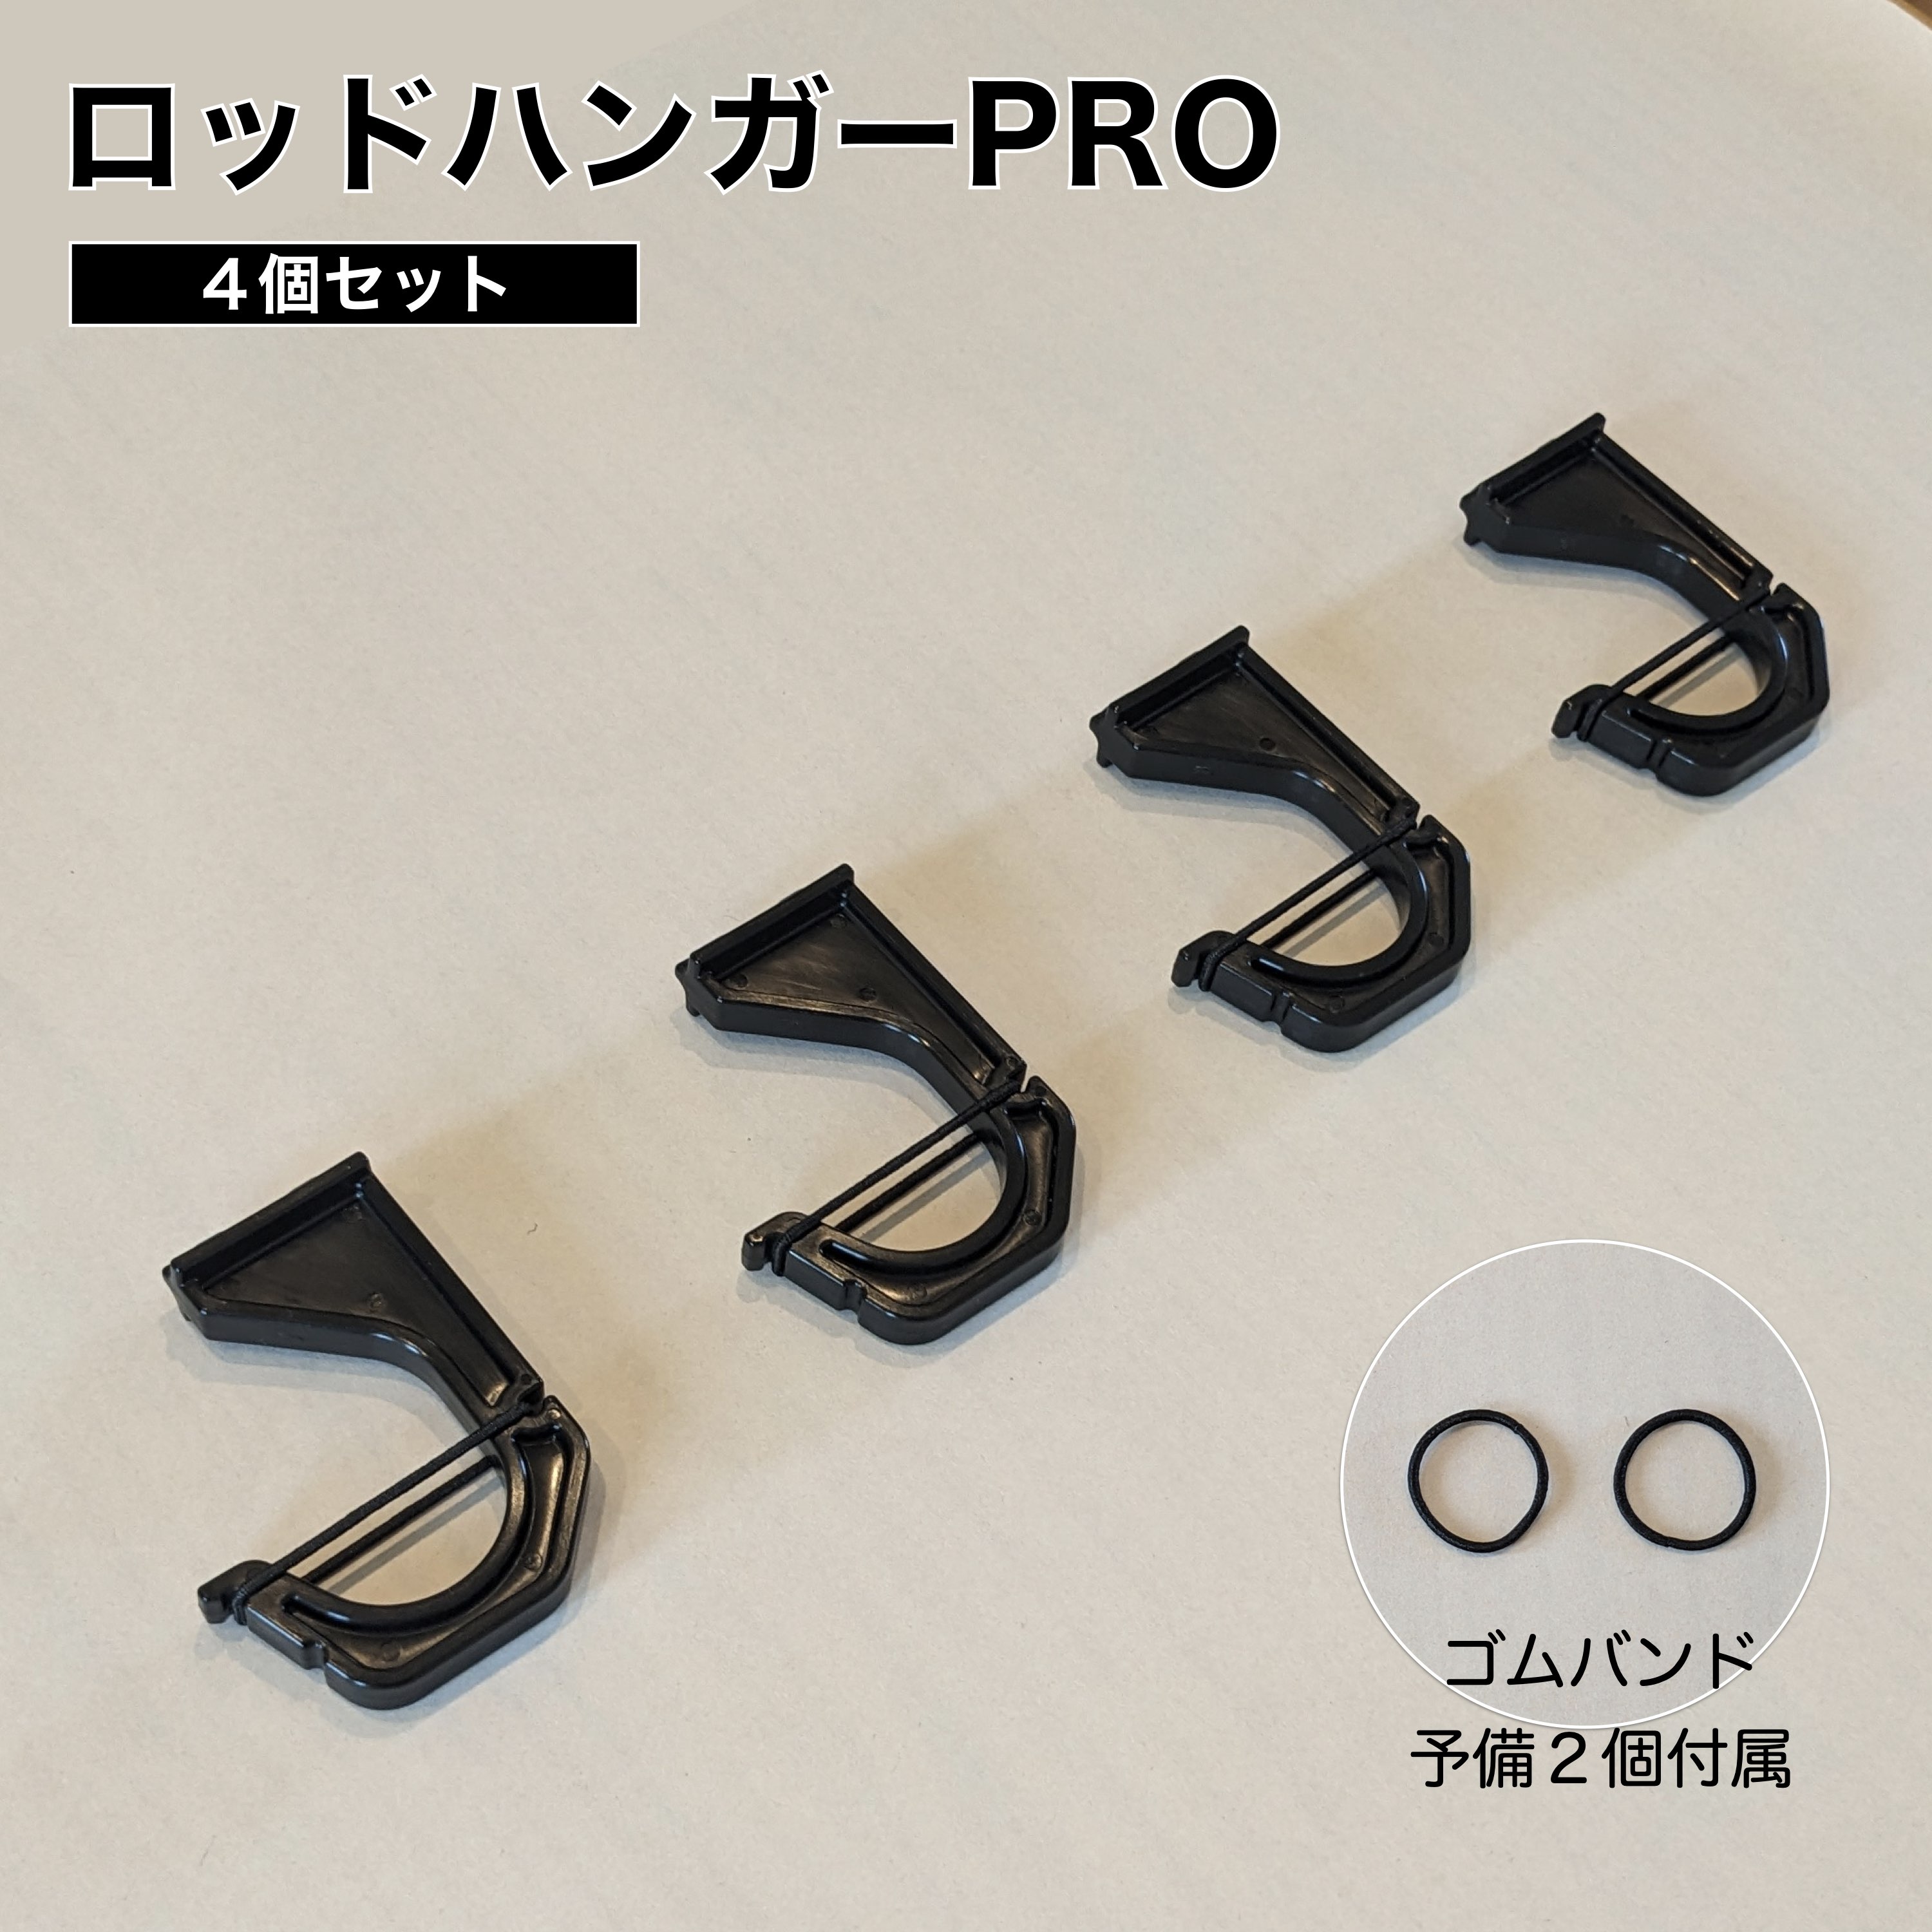  держатель для удочек PRO 4 шт. комплект ( удилище 2 минут ) сделано в Японии ROH-H040 держатель для удочки PRO удилище подставка удочка автомобильный NEWTRAIL новый Trail 